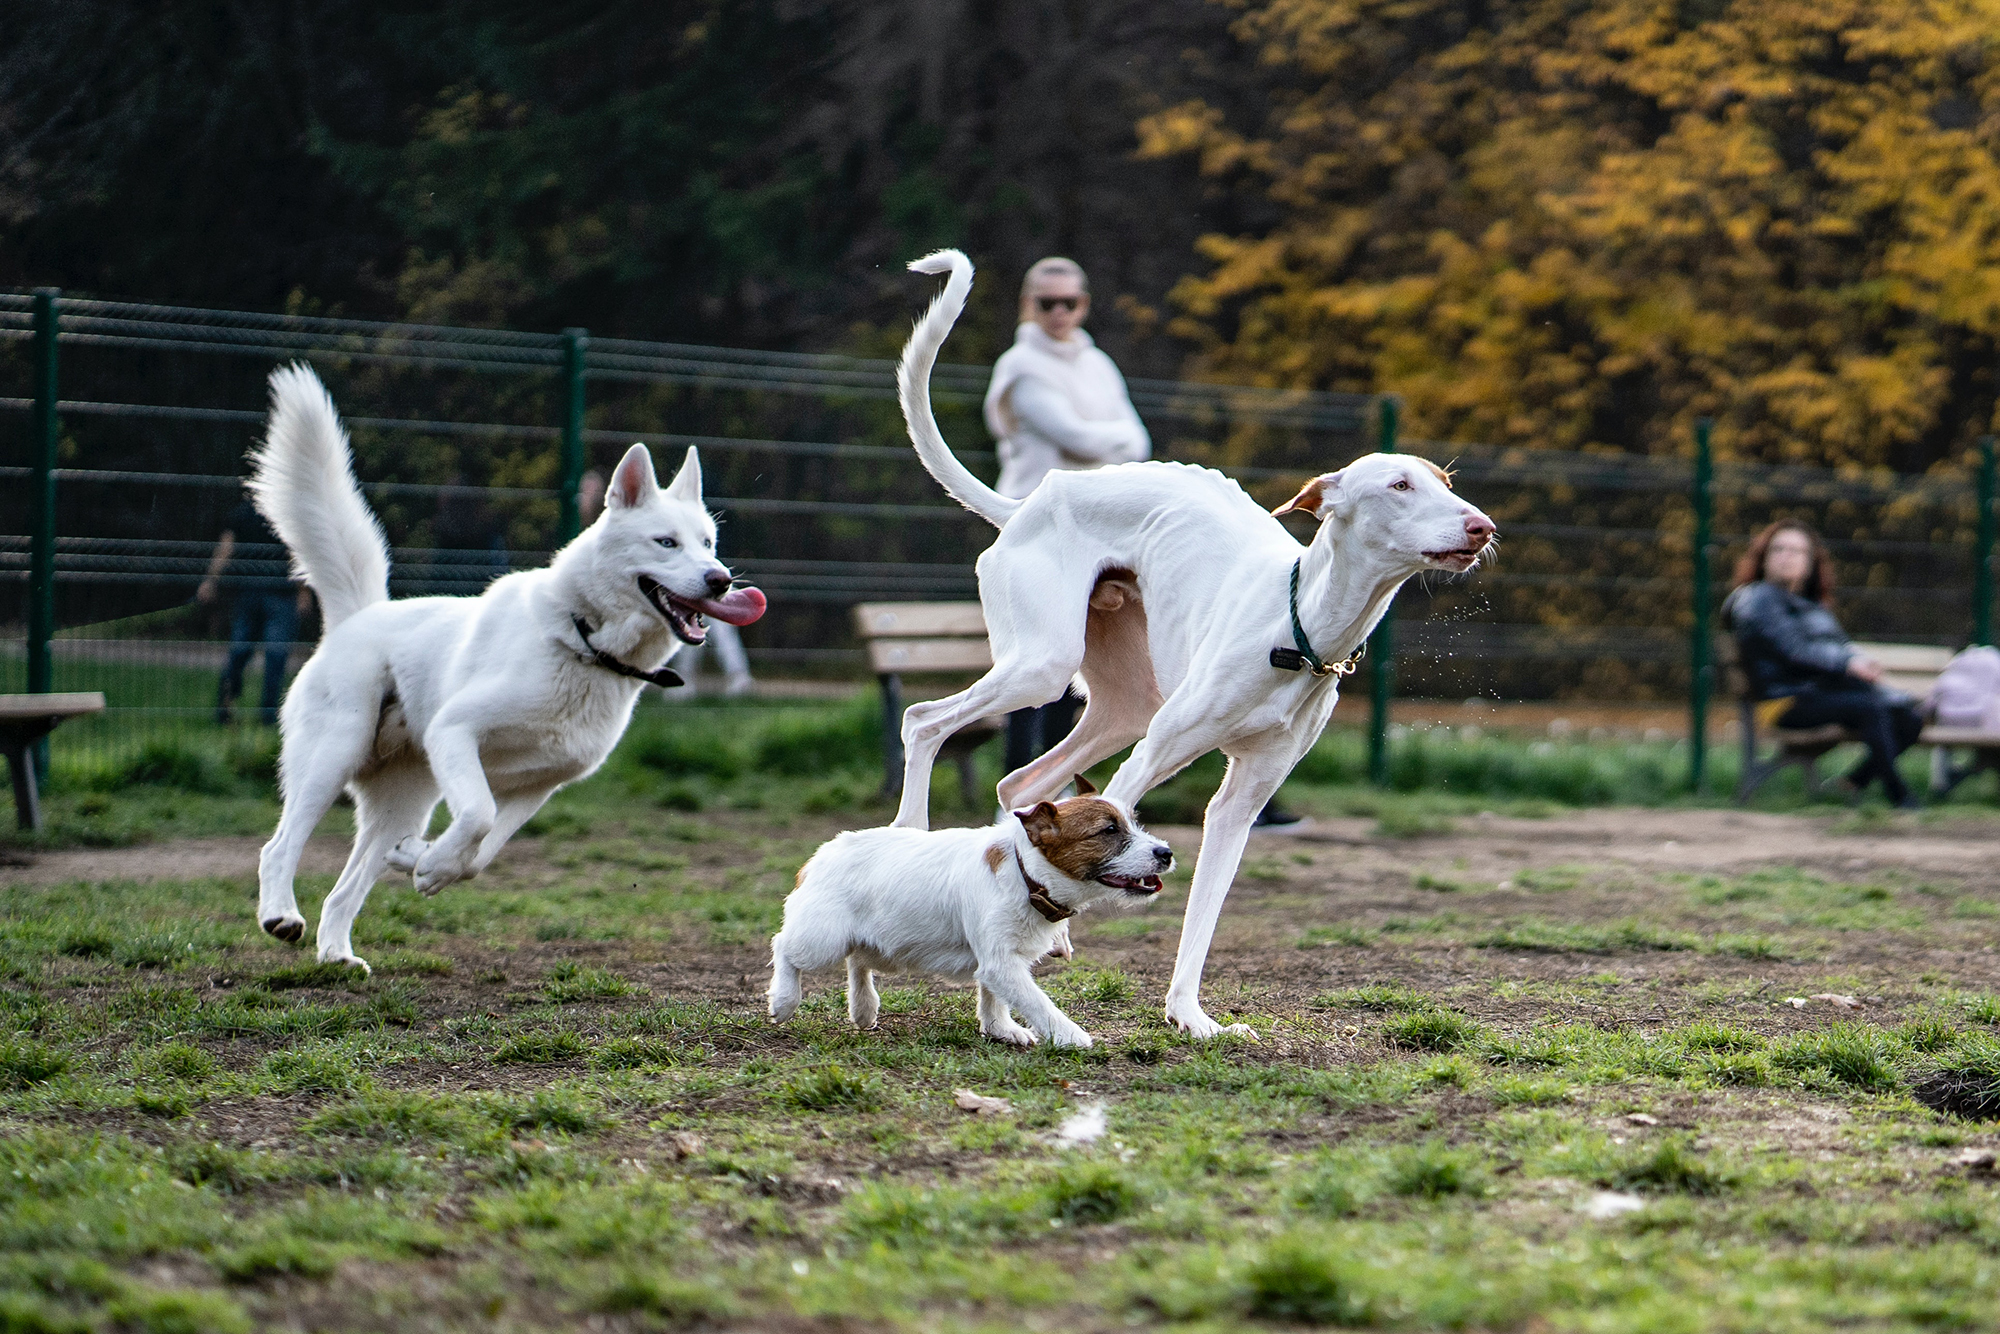 Nagyobb a fertőzés kockázata, ha adott helyen sok kutya fordul meg Például: sétáltató helyek, kutyafuttató, kutyapark, kutyaiskola, kutyastrand, állatorvosi rendelő